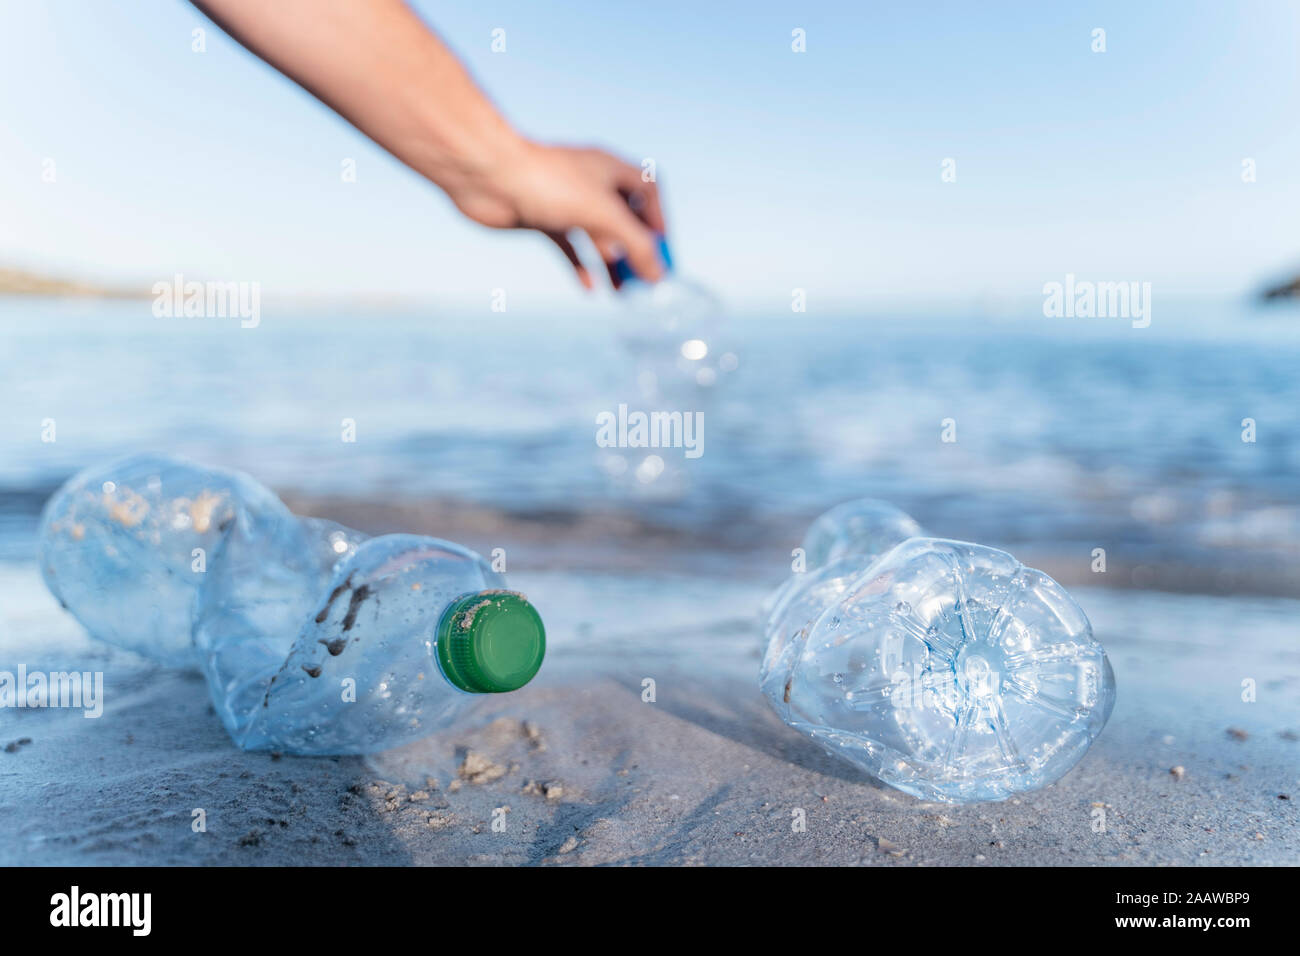 Mano recogiendo botellas vacías de plástico a orillas del mar Foto de stock